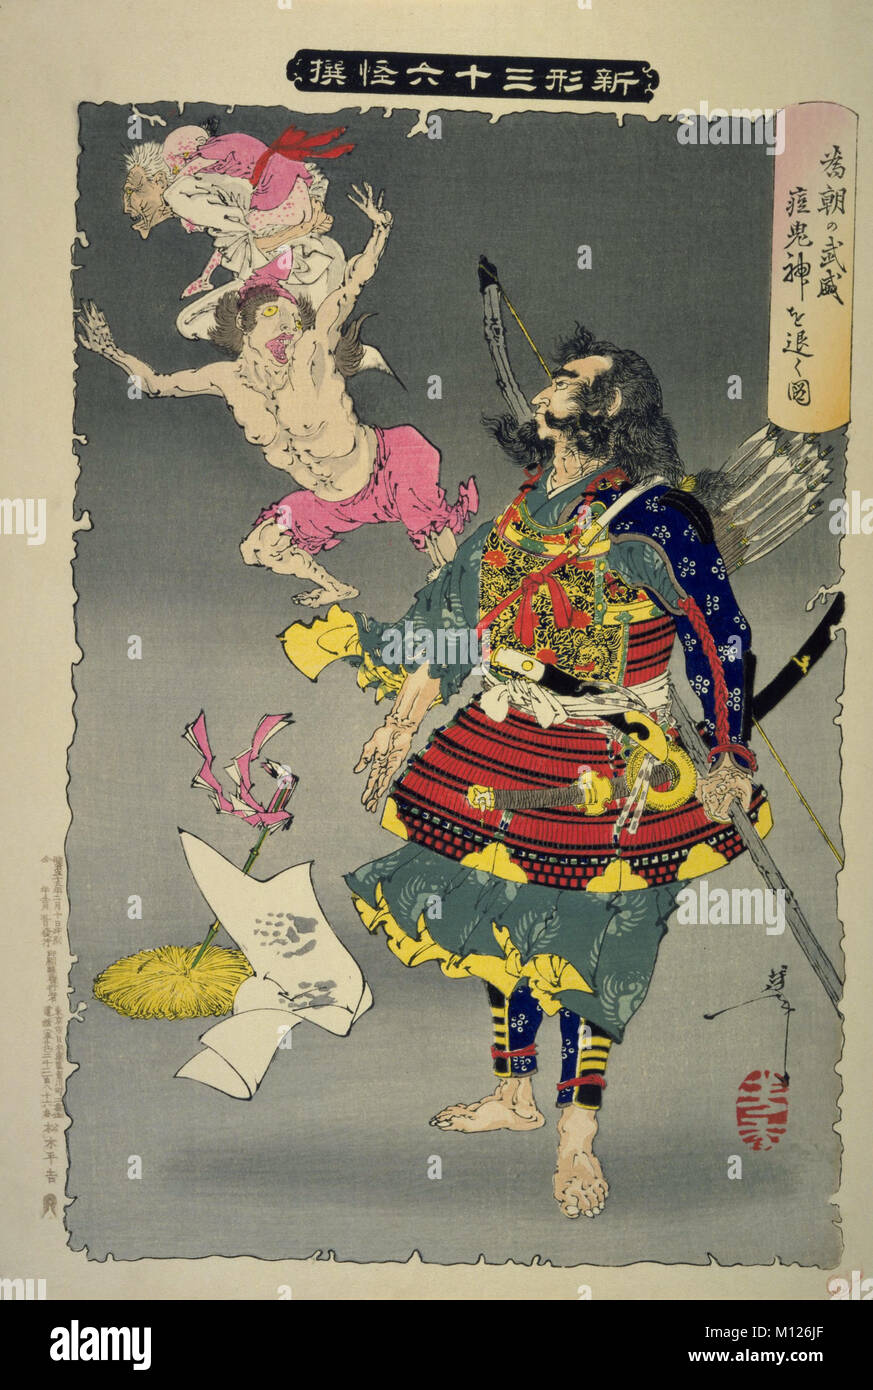 Shinsen Sanjurokkaisen Minamoto no Tametomo defeats a smallpox devil , by Tsukioka Yoshitoshi, Meiji Period, Private Collection Stock Photo